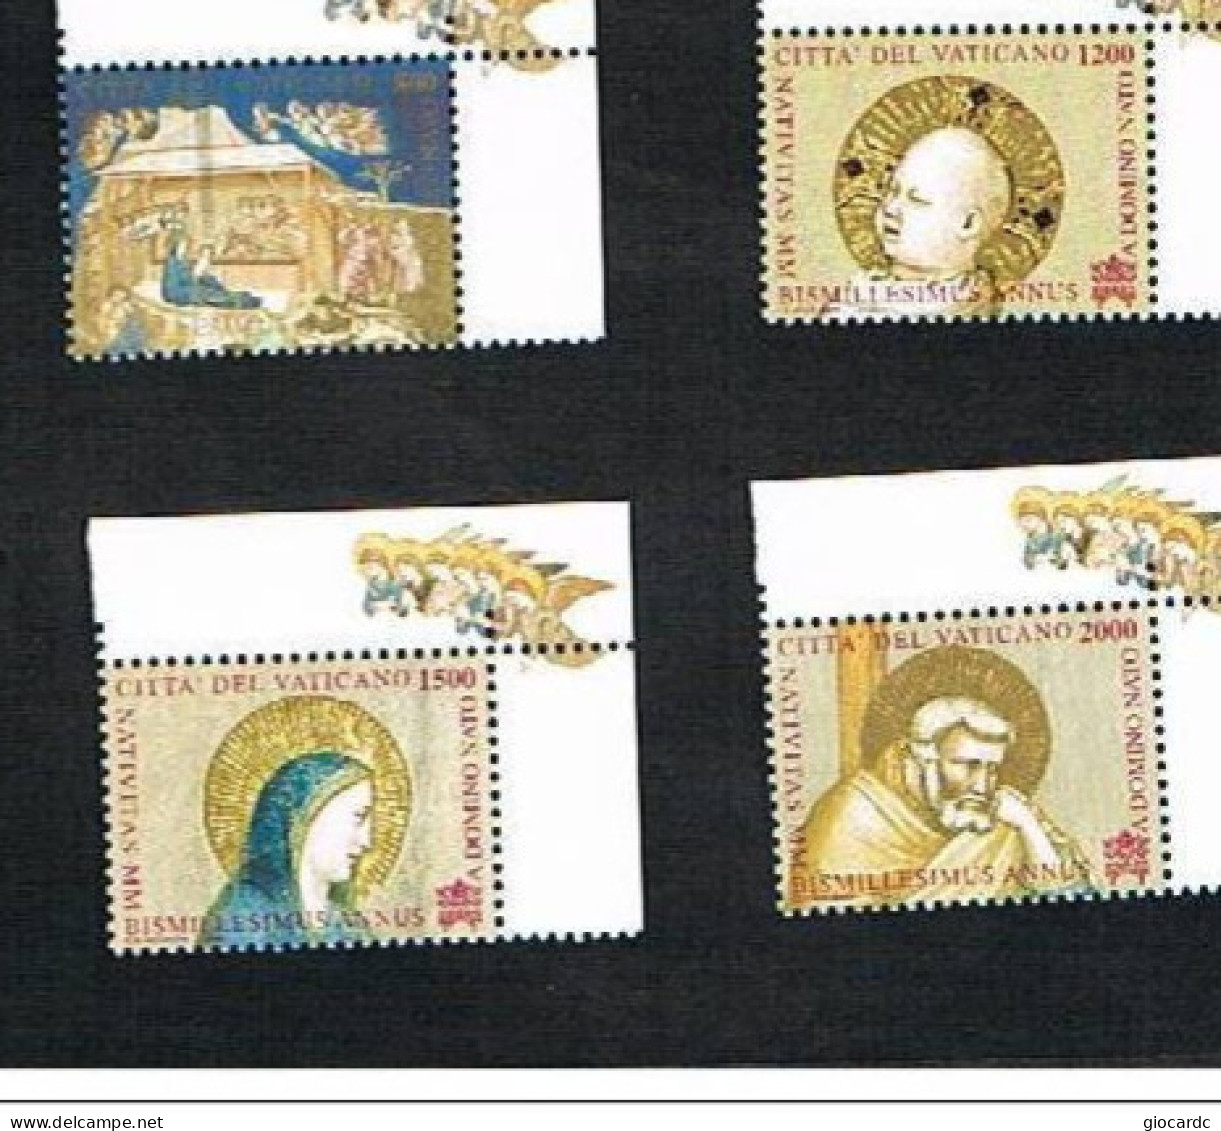 VATICANO - UNIF.1224.1227    -  2000   NATALE: BIMILLENARIO  NASCITA DI GESU': AFFRESCO DI GIOTTO  -   NUOVI (MINT) ** - Unused Stamps